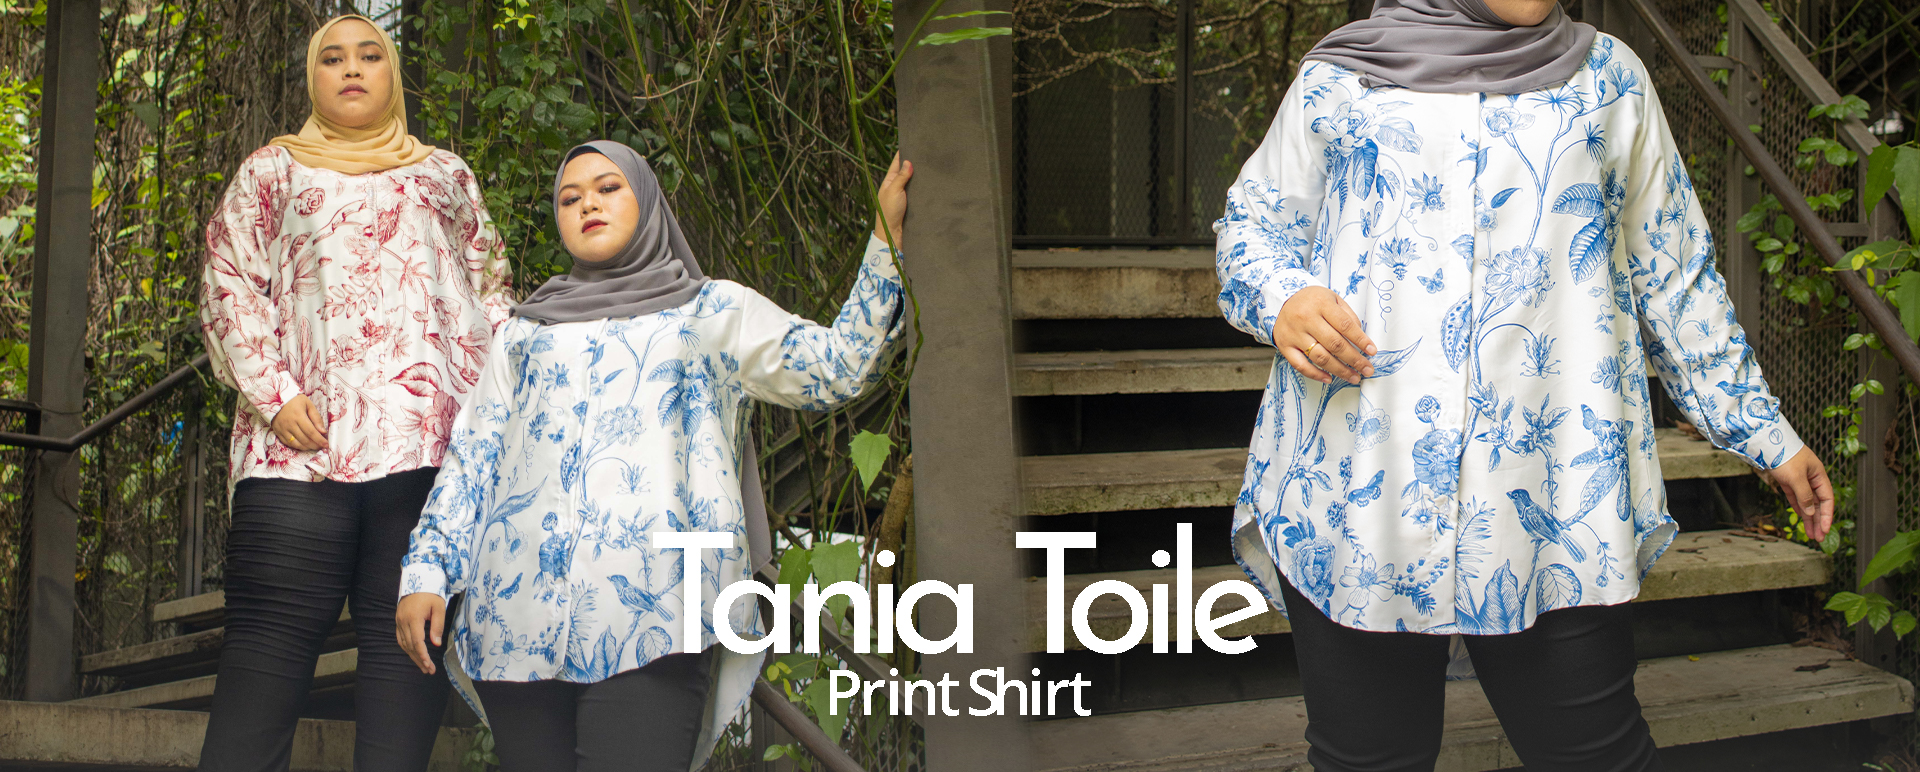 Tania Toile-Print Shirt